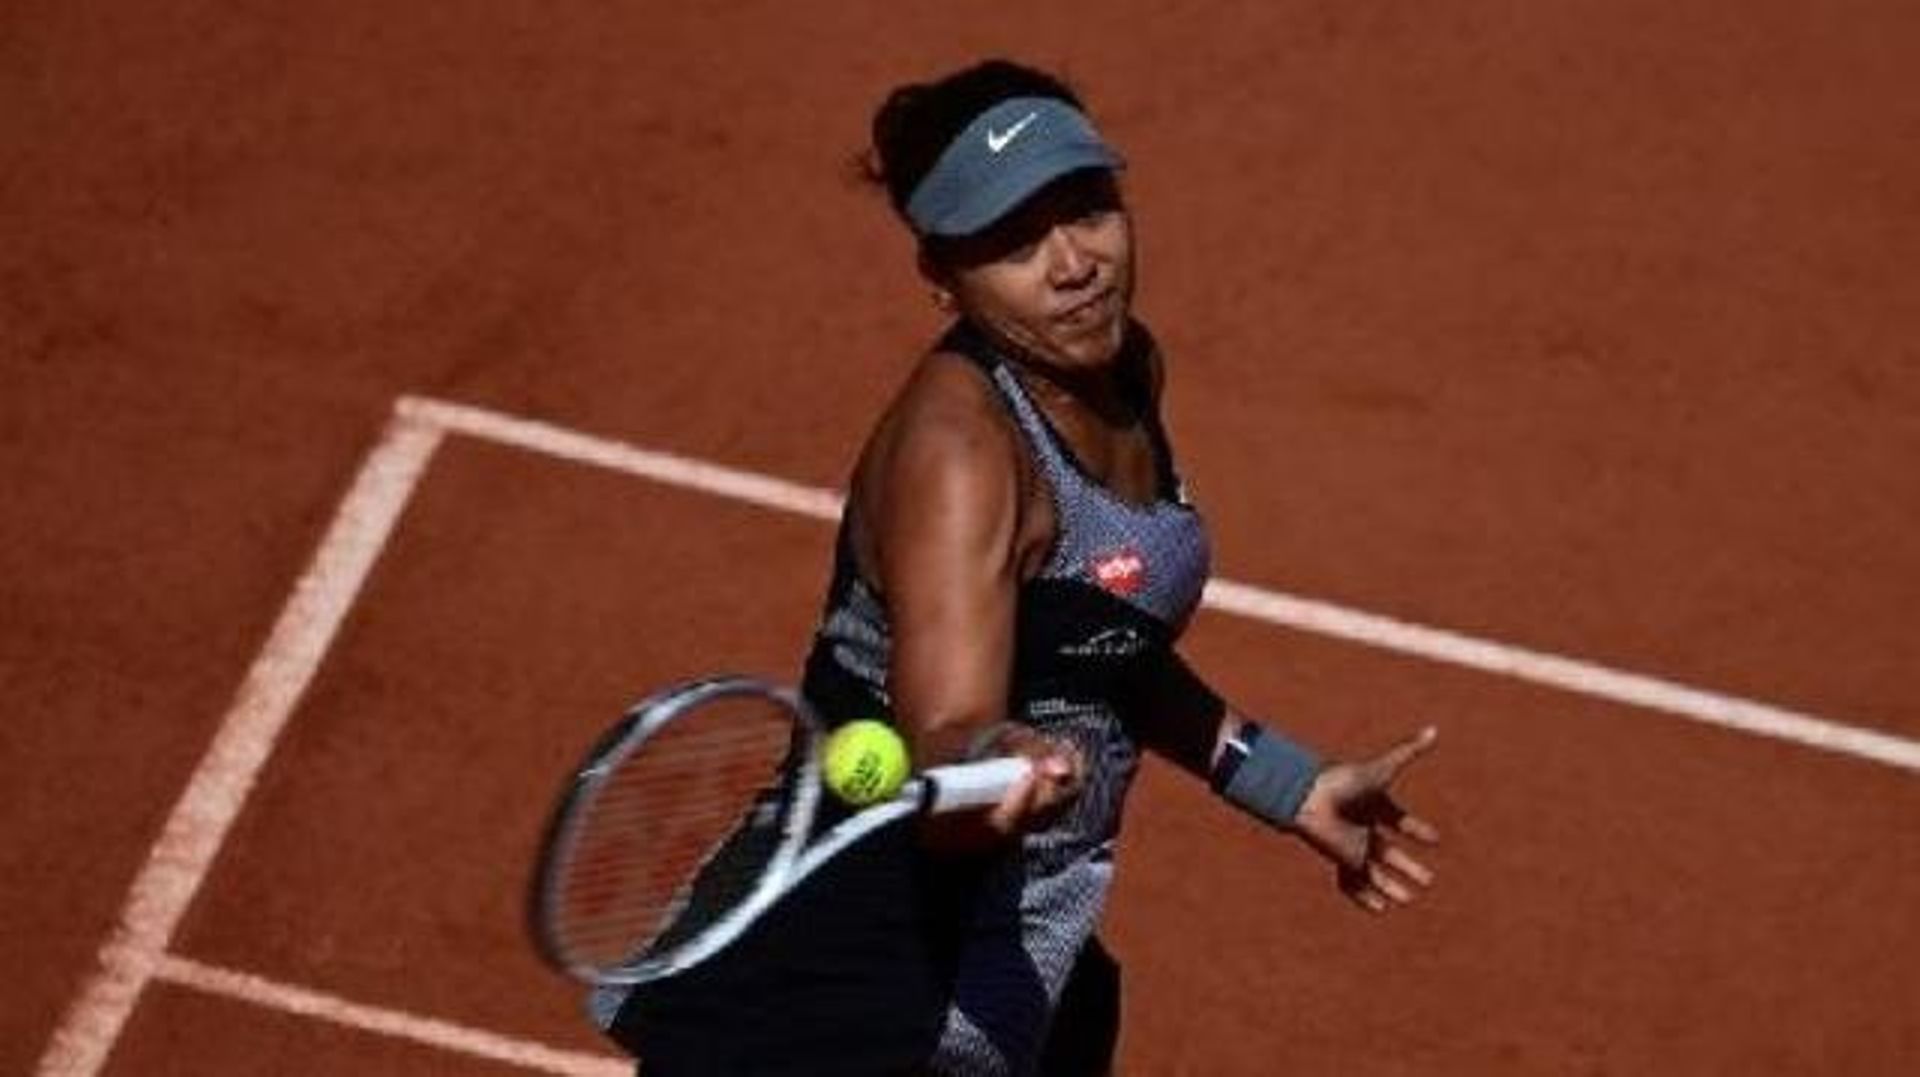 Roland-Garros – Le retrait d’Osaka est "une issue malheureuse" selon la Fédération française de tennis